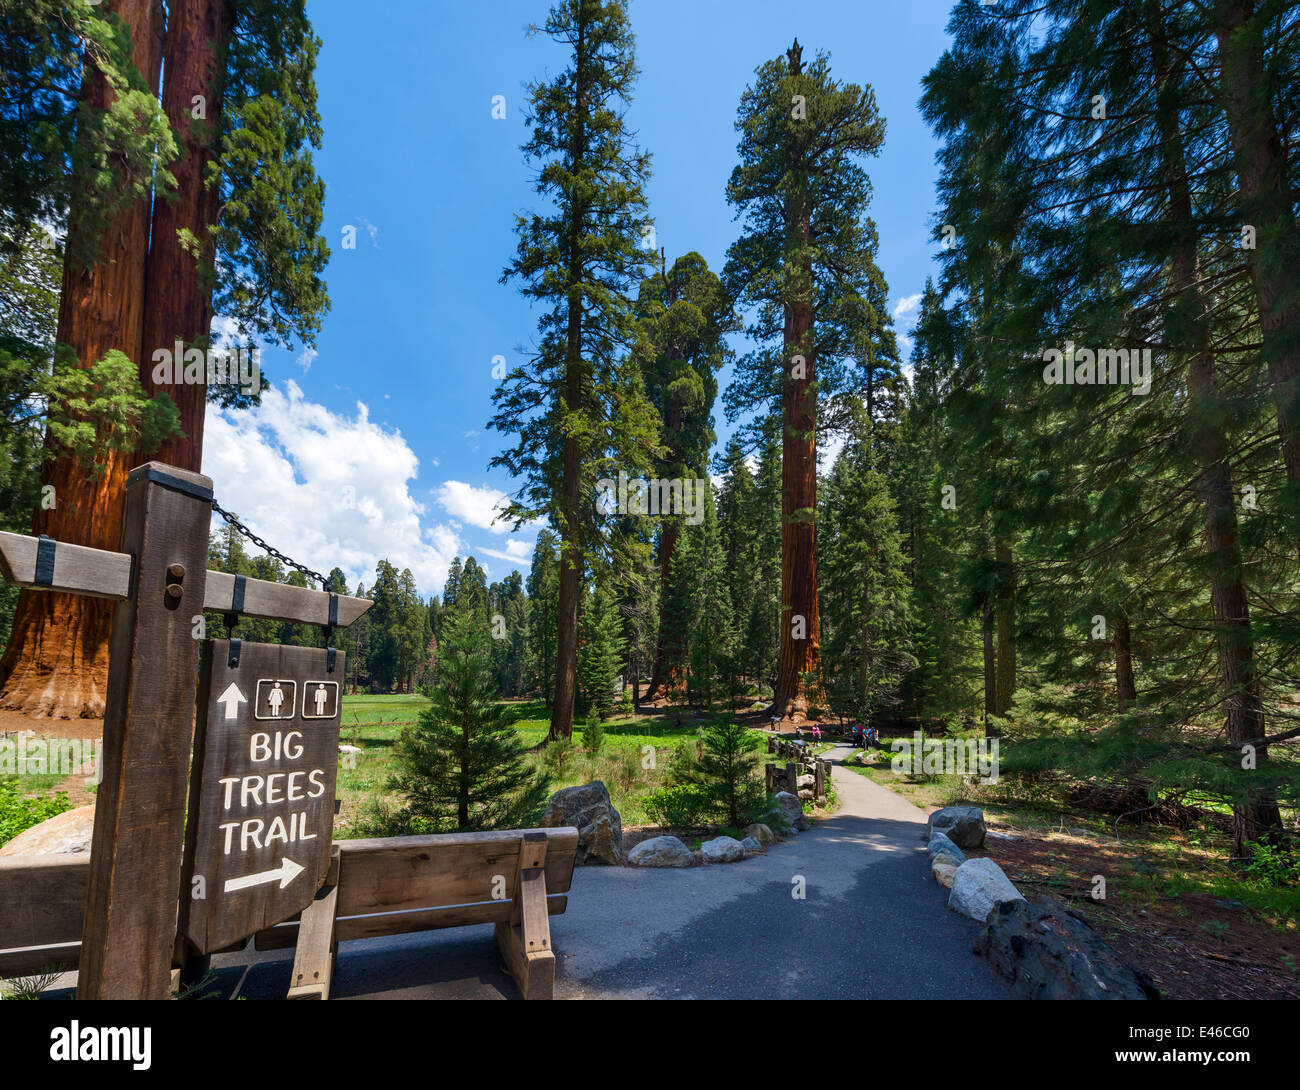 Les grands arbres Trail à Sequoia National Park. Sierra Nevada, en Californie, USA Banque D'Images